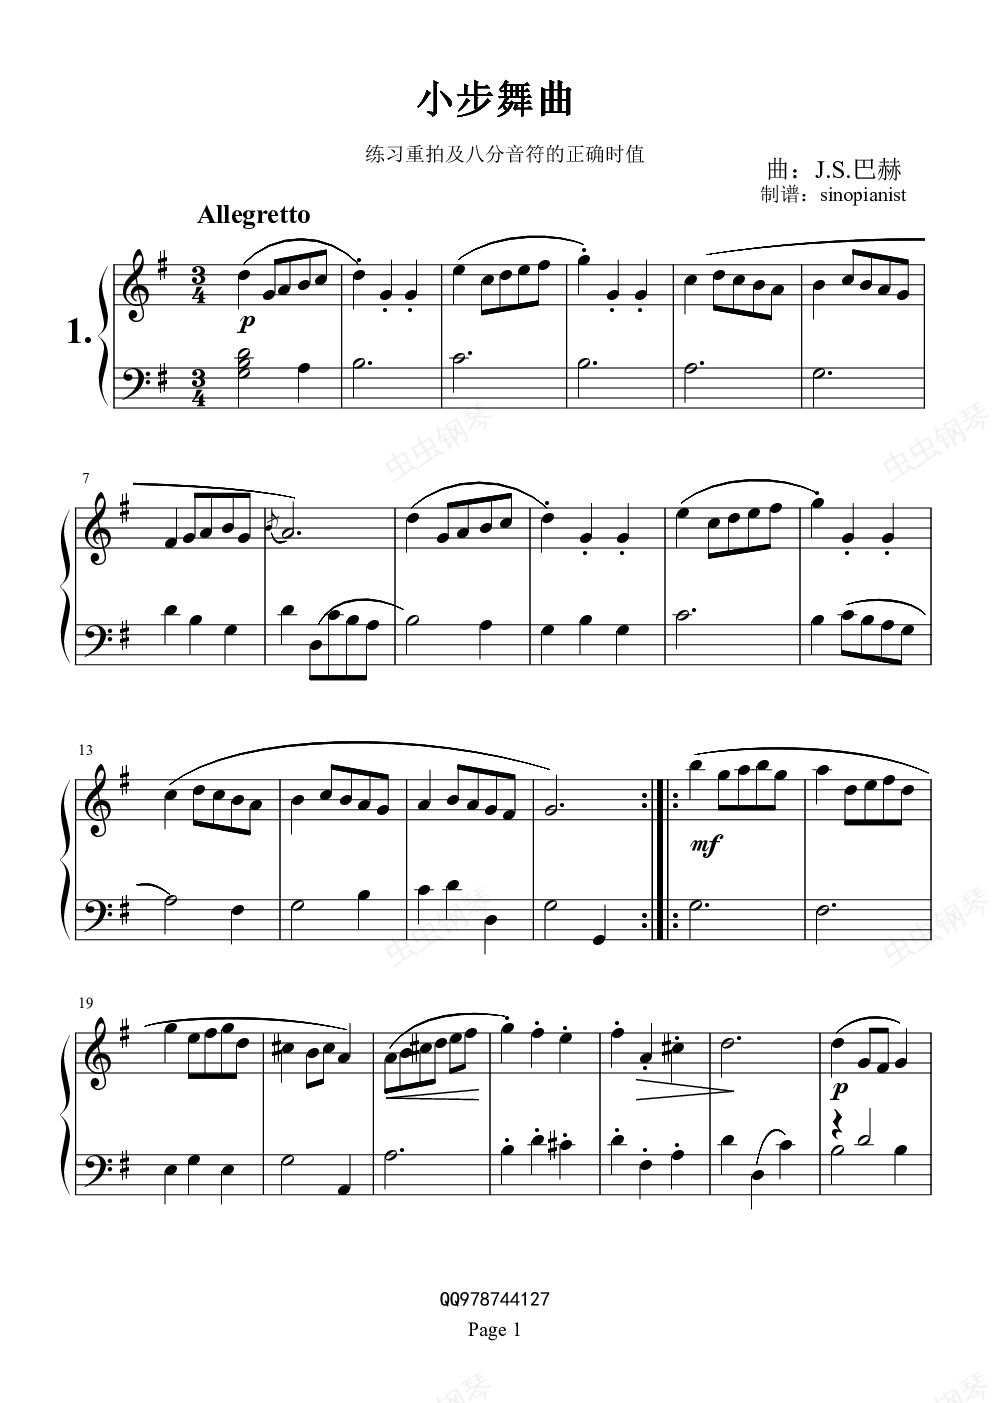 巴赫初级钢琴曲集01小步舞曲g调钢琴谱,巴赫初级钢琴曲集01小步舞曲钢